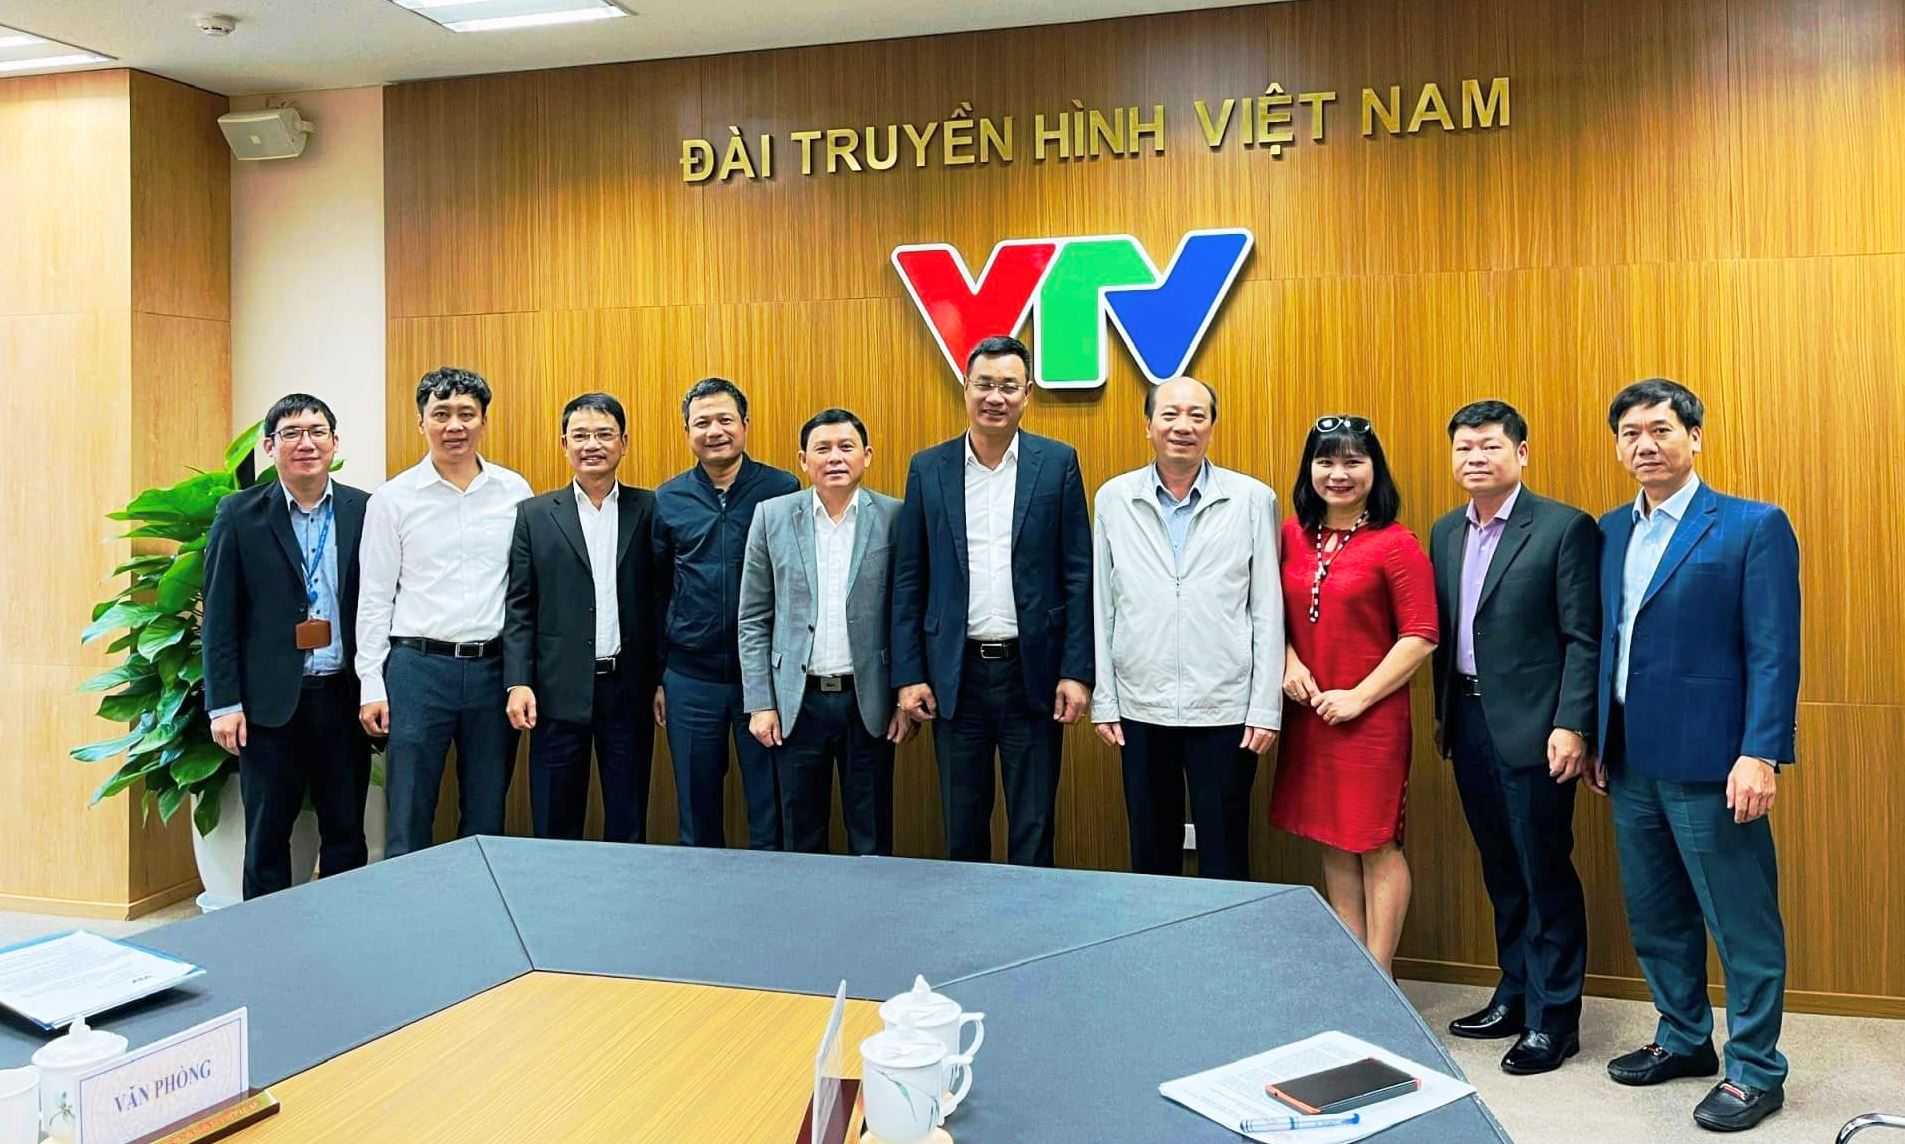 Đoàn công tác của UBND tỉnh Đắk Lắk chụp hình kỷ niệm với lãnh đạo Đài Truyền hình Việt Nam